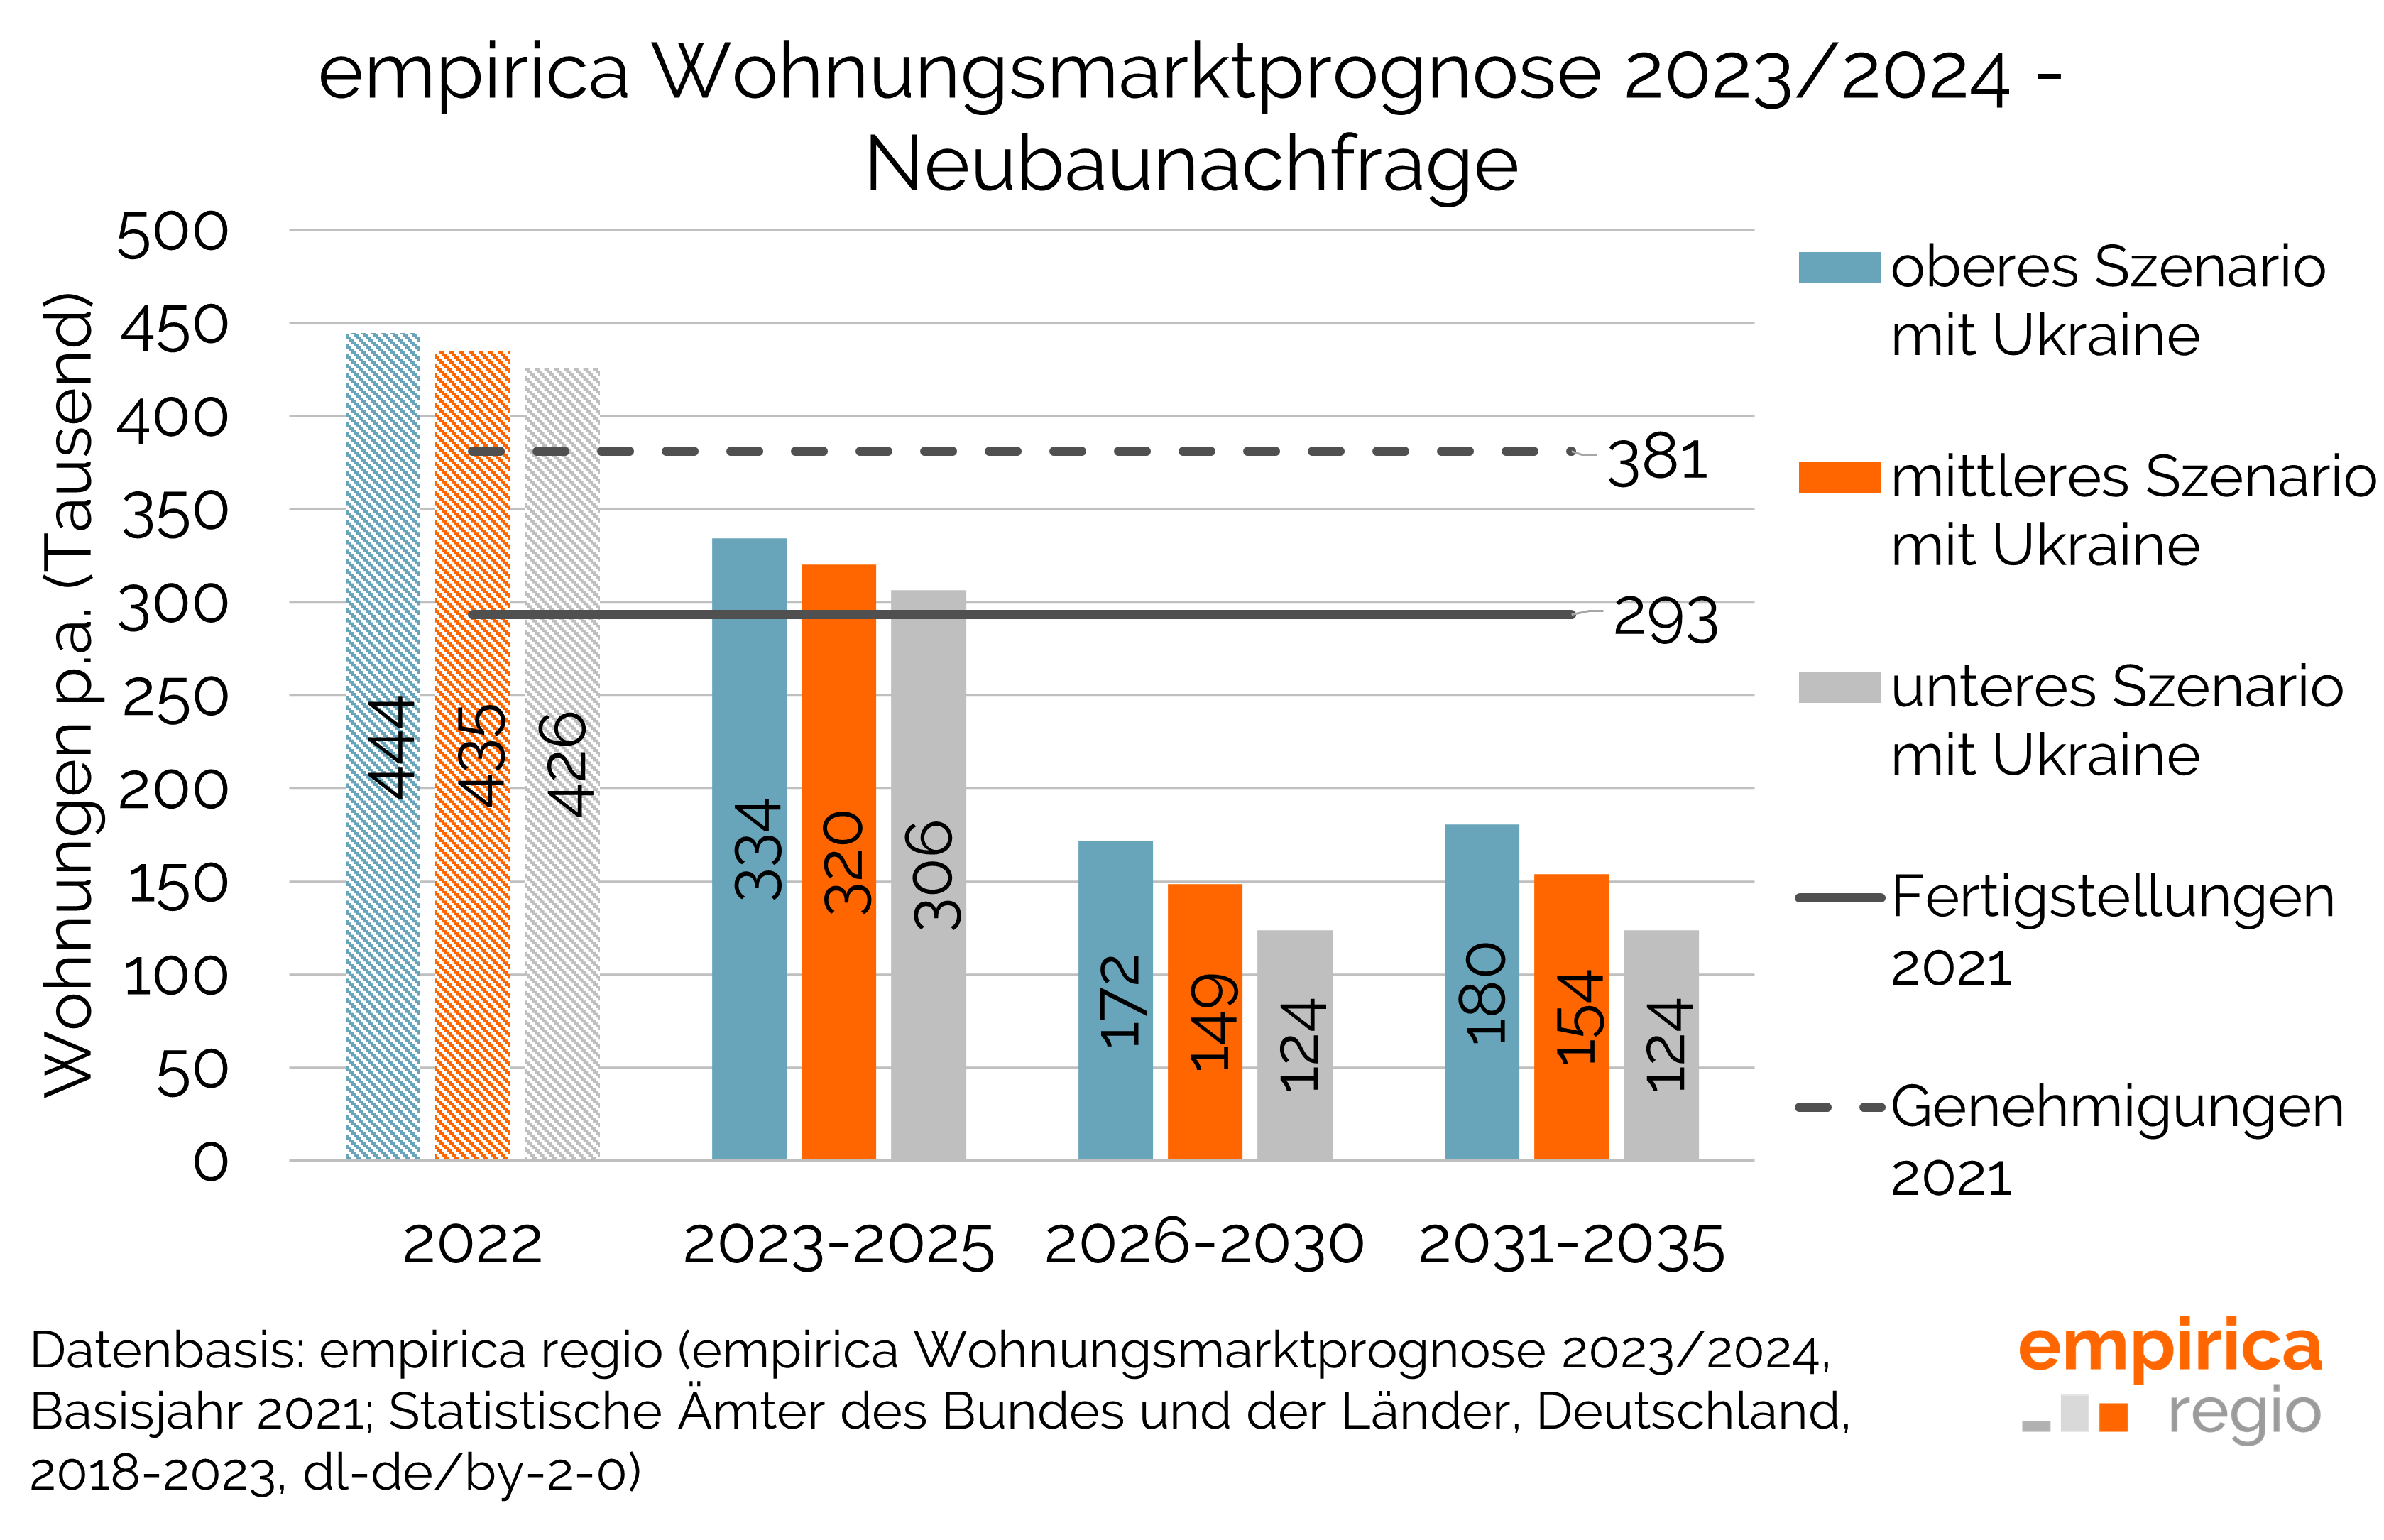 empirica Wohnungsmarktprognose 2023/2024 - Drei Szenarien im Vergleich